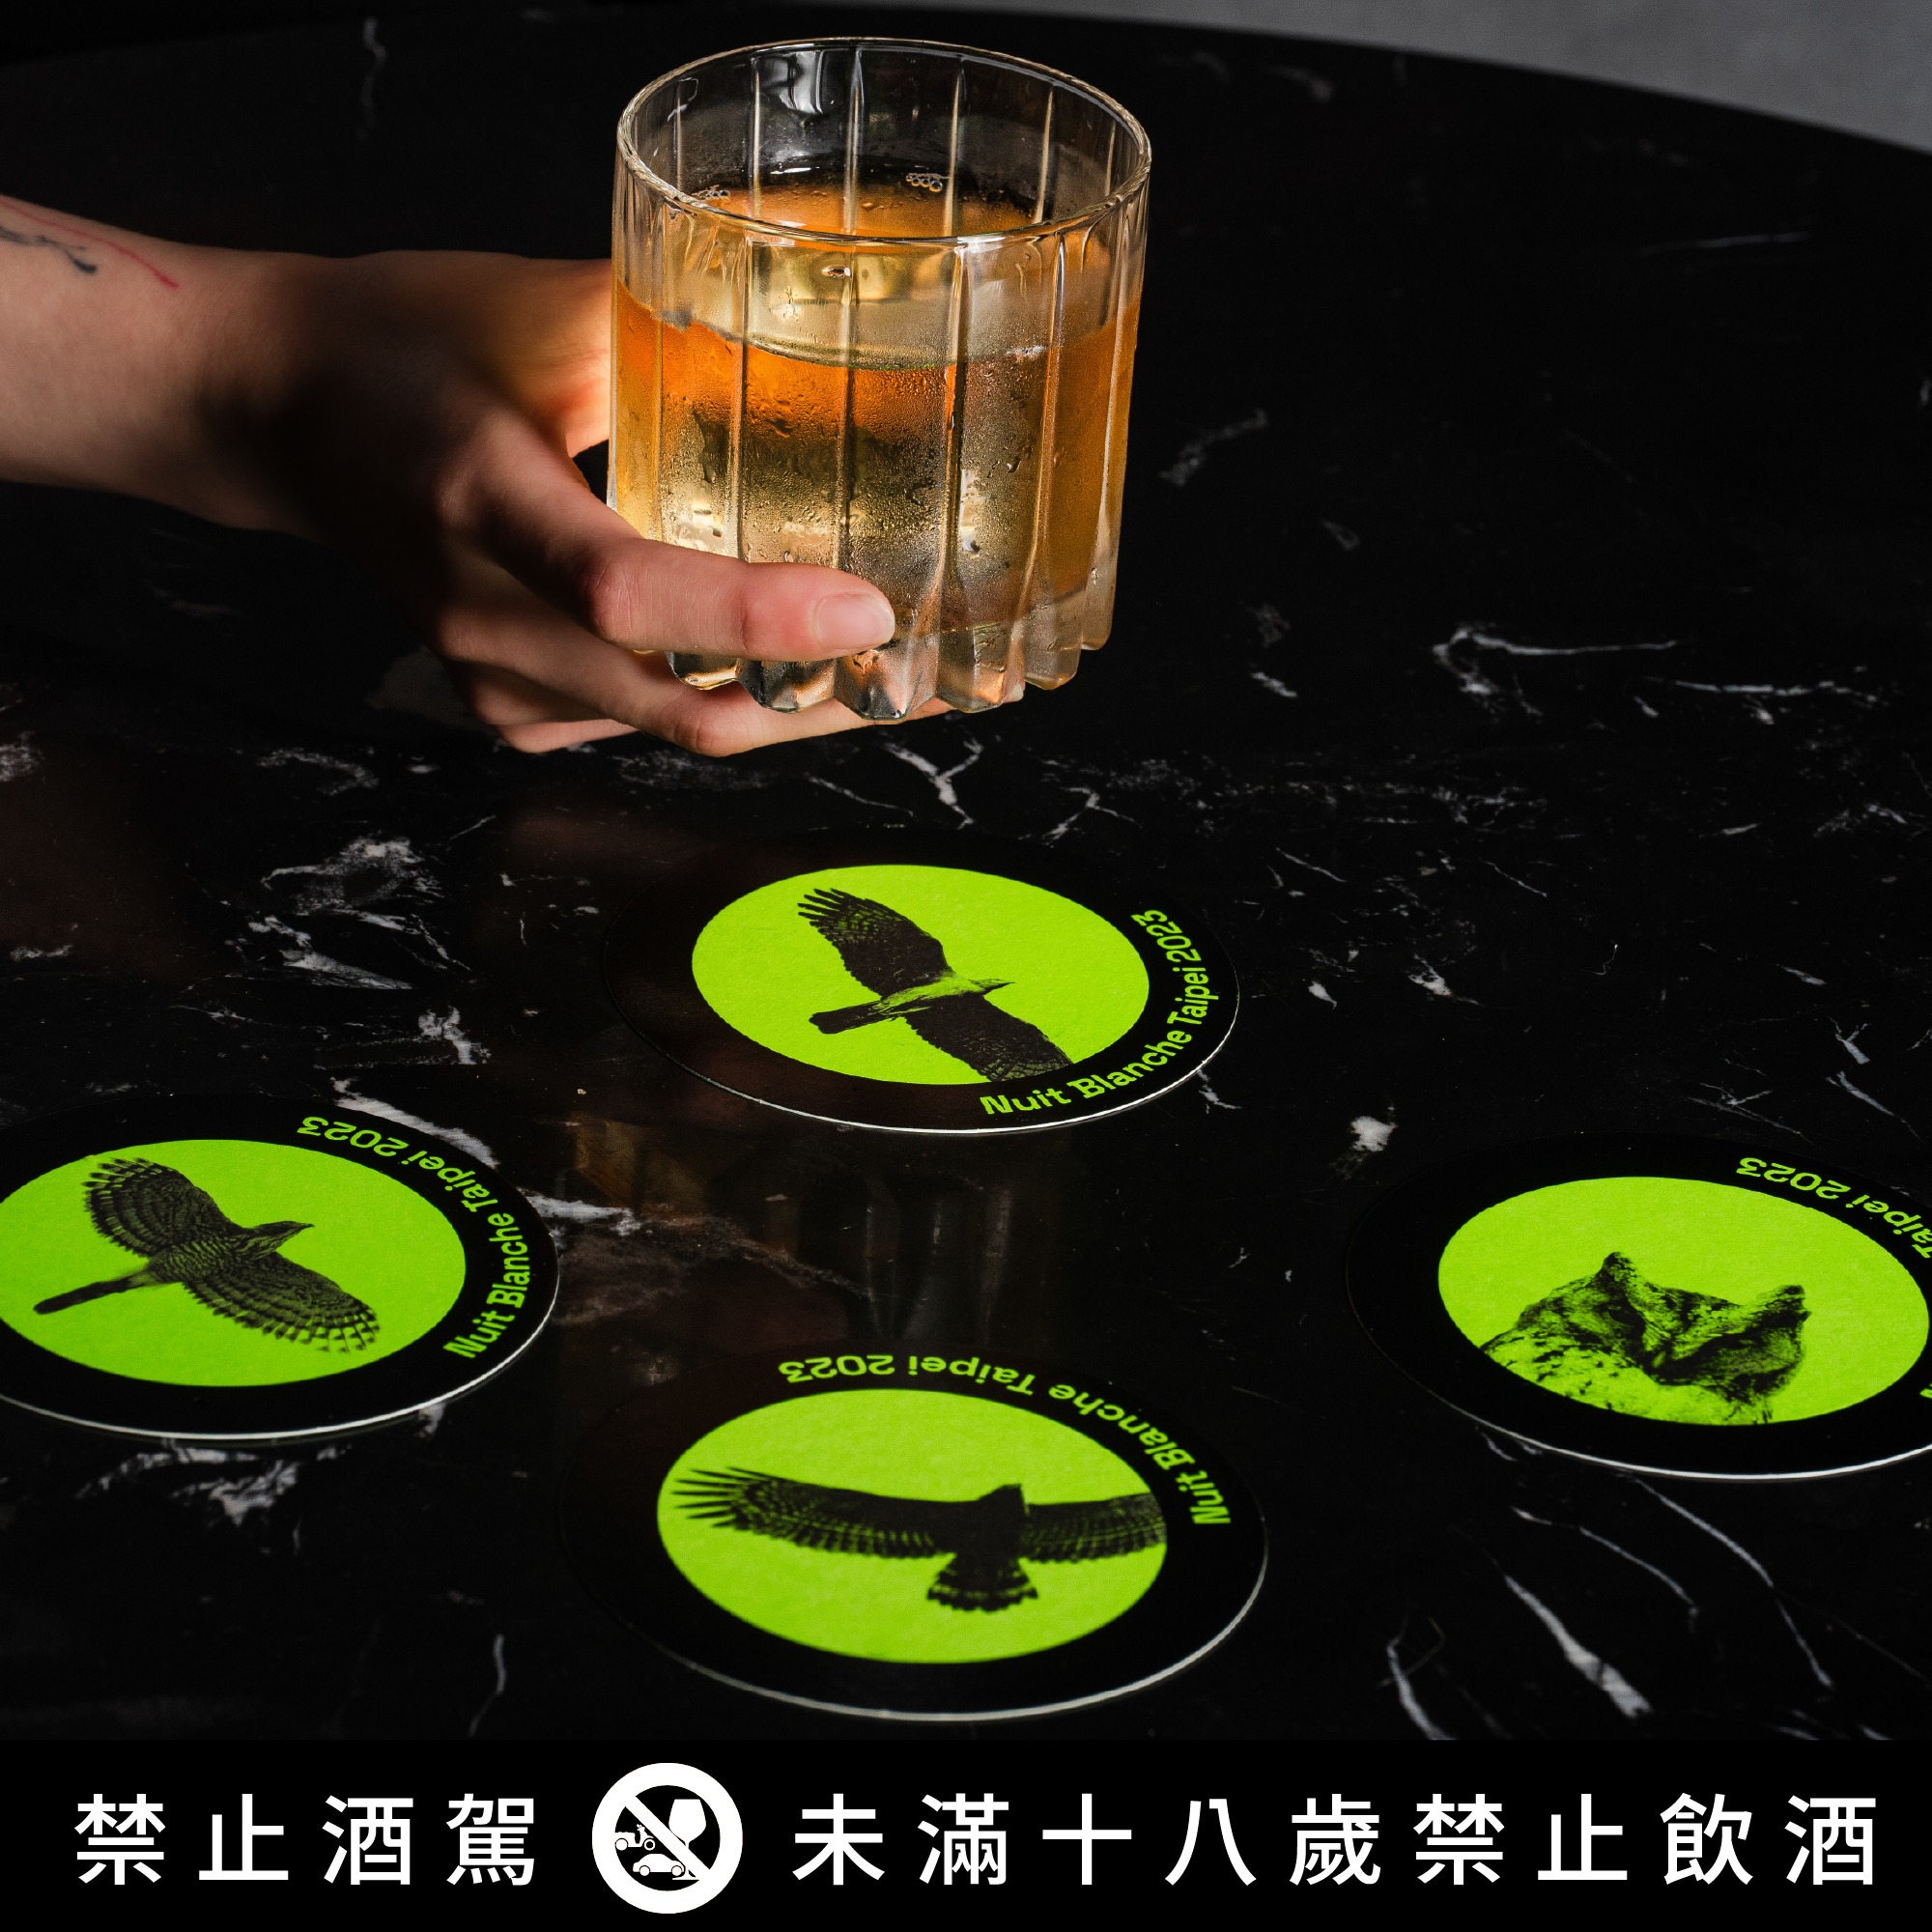 「台灣猛禽研究會」 在酒吧舉杯暢談都市猛禽保育。(圖 / 翻攝自白晝之夜 Nuit Blanche FB)